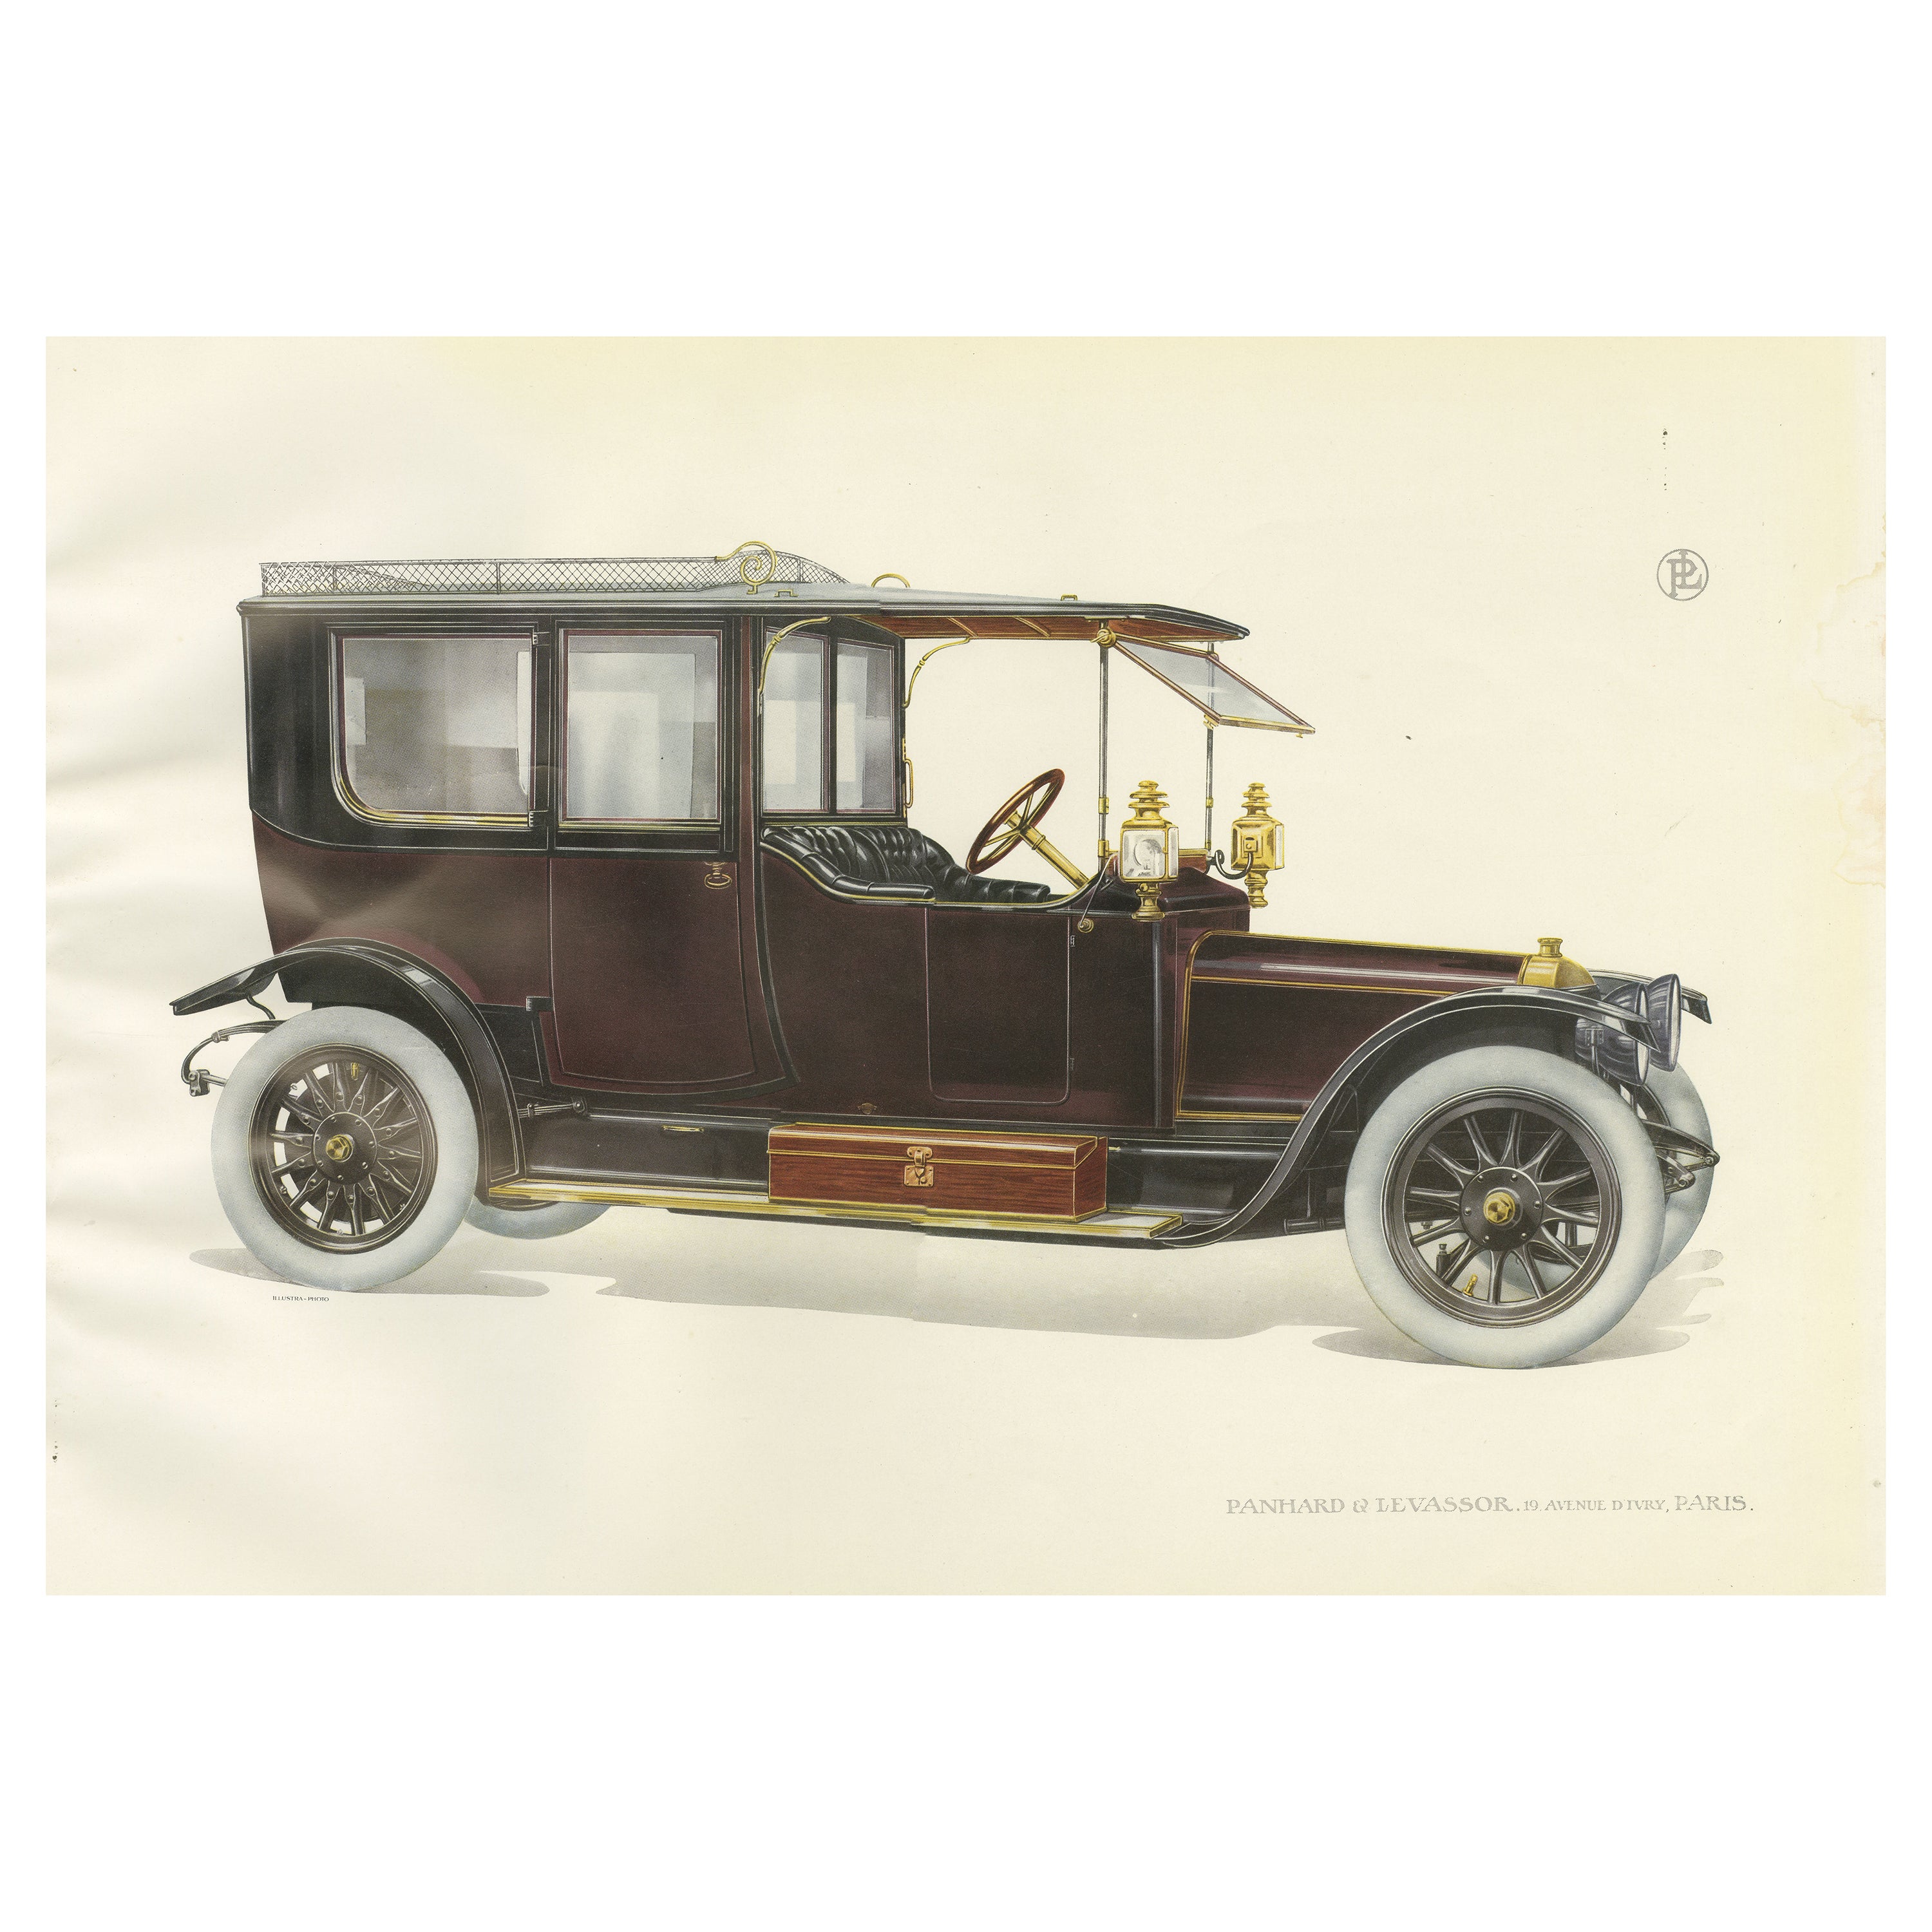 Antique Print of the Panhard et Levassor Limousine Car, 1914